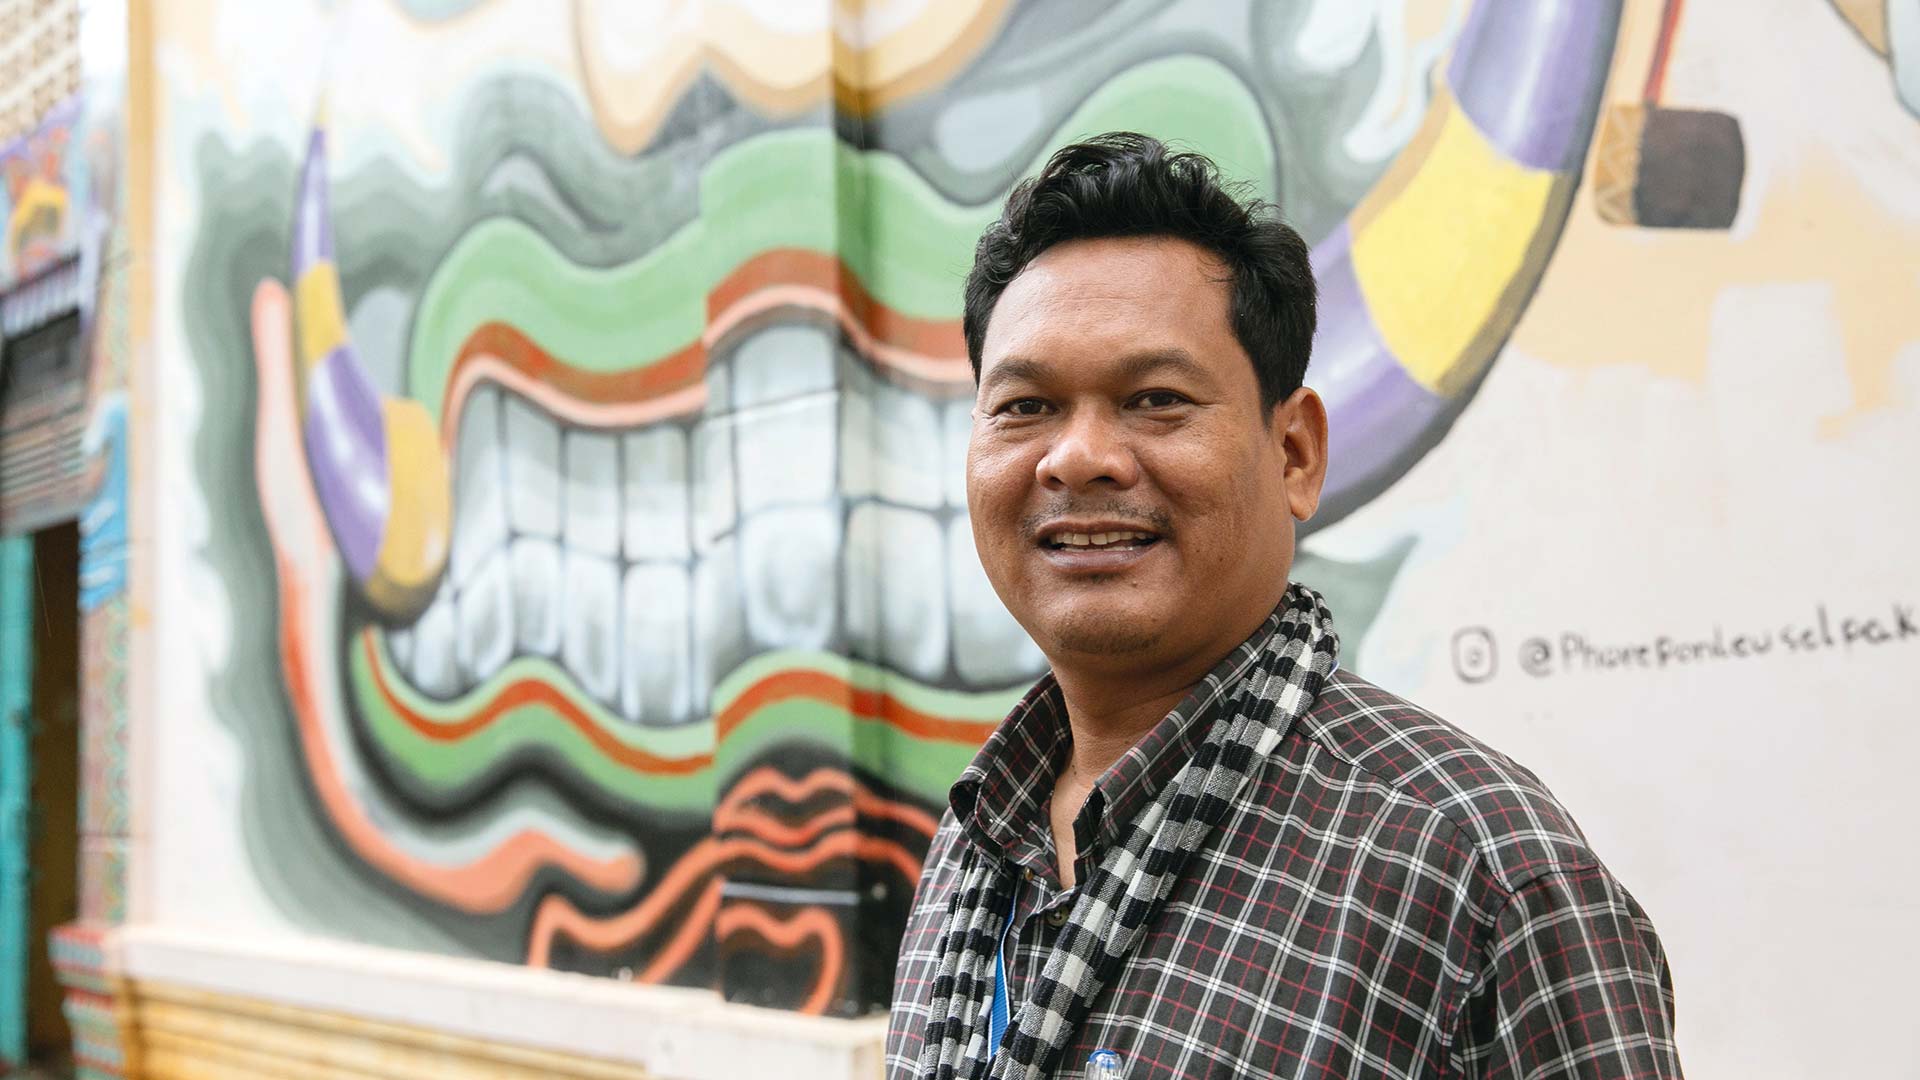 Khuon Det lebte als Jugendlicher in einem Flüchtlingslager. Eine Begegnung mit Künstlern änderte sein Leben. Später gründete er mit anderen die Schule „Phare Ponleu Salpak“, was übersetzt „Licht der Künste“ bedeutet.